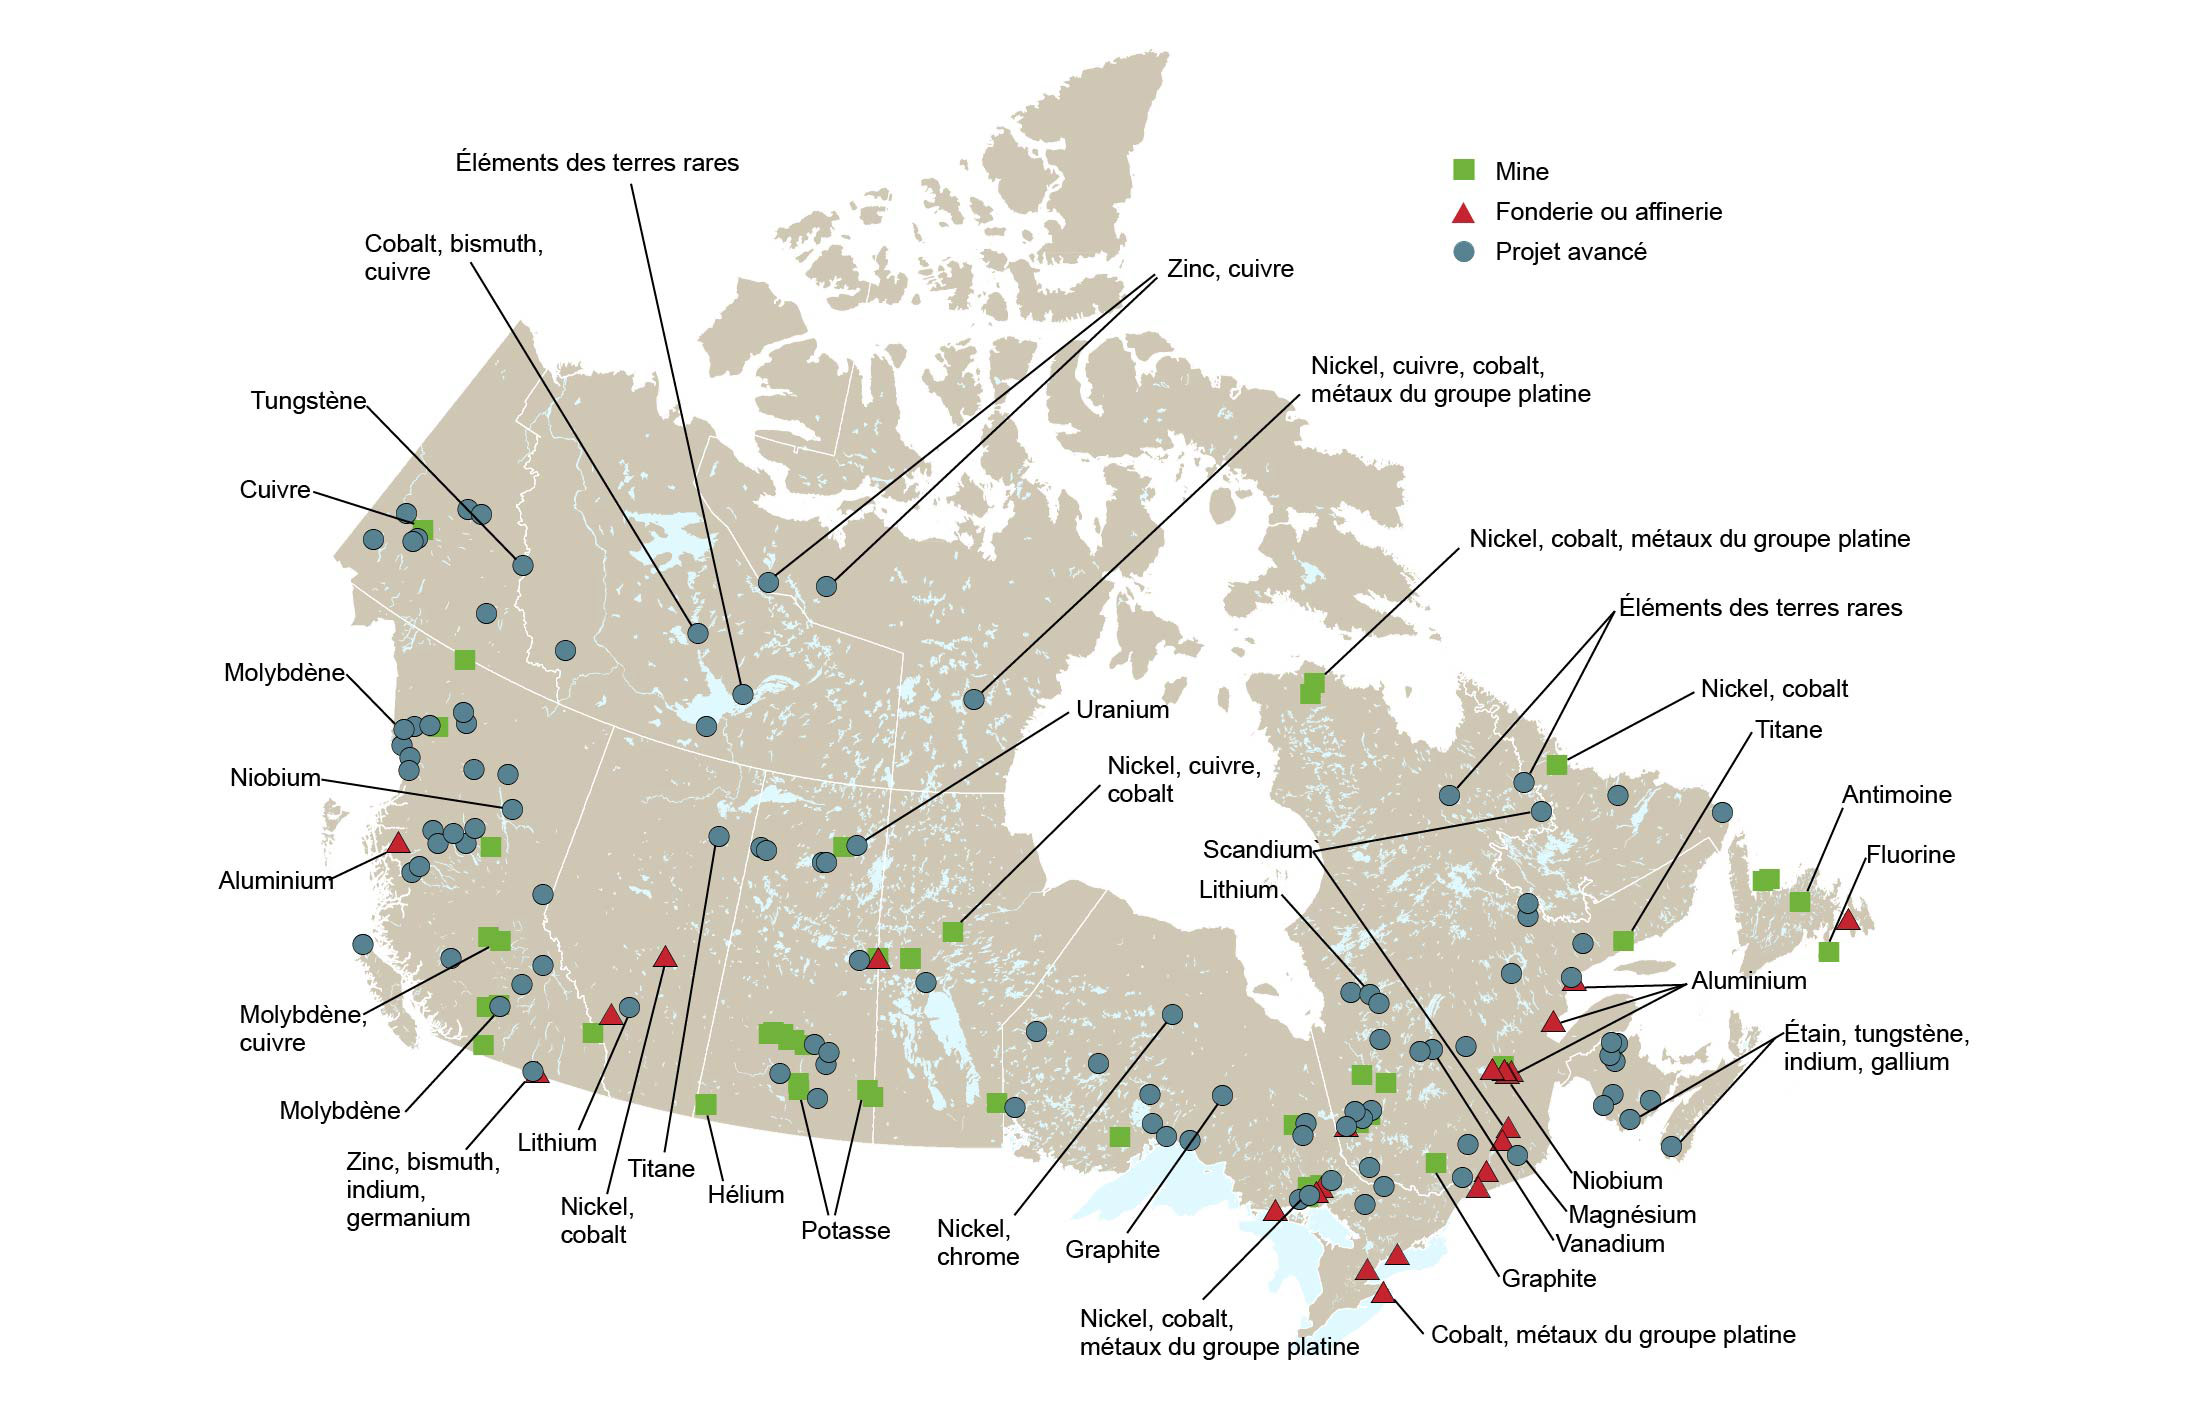 Les possibilités liées aux minéraux critiques s’étendent à toutes les régions du Canada